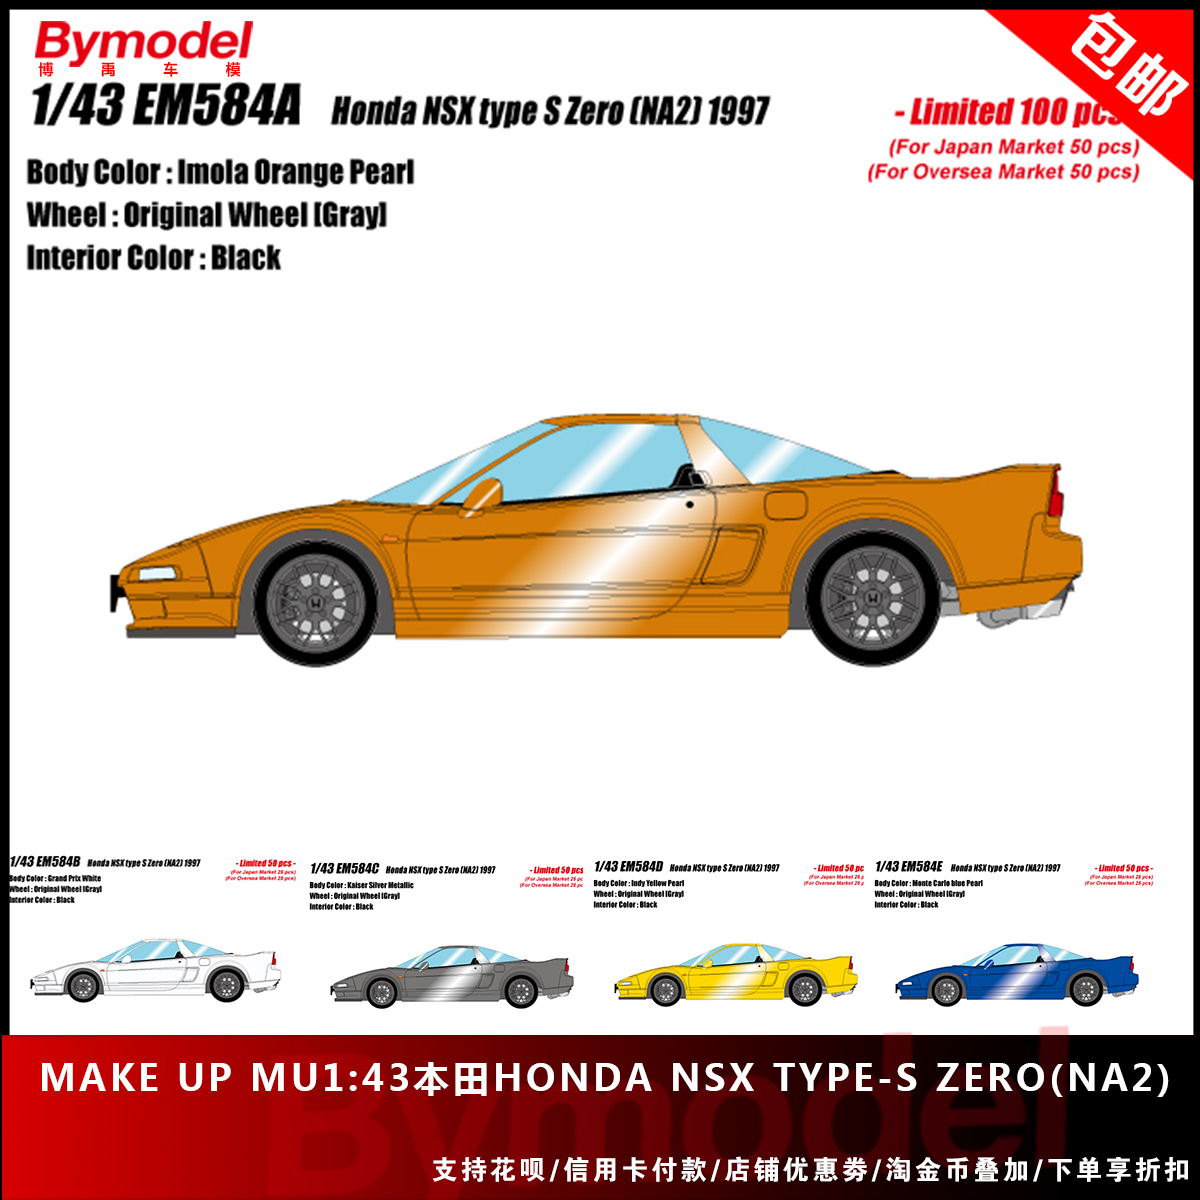 Make up MU1:43本田HONDA NSX Type-S Zero(NA2) 1997 限量版模型